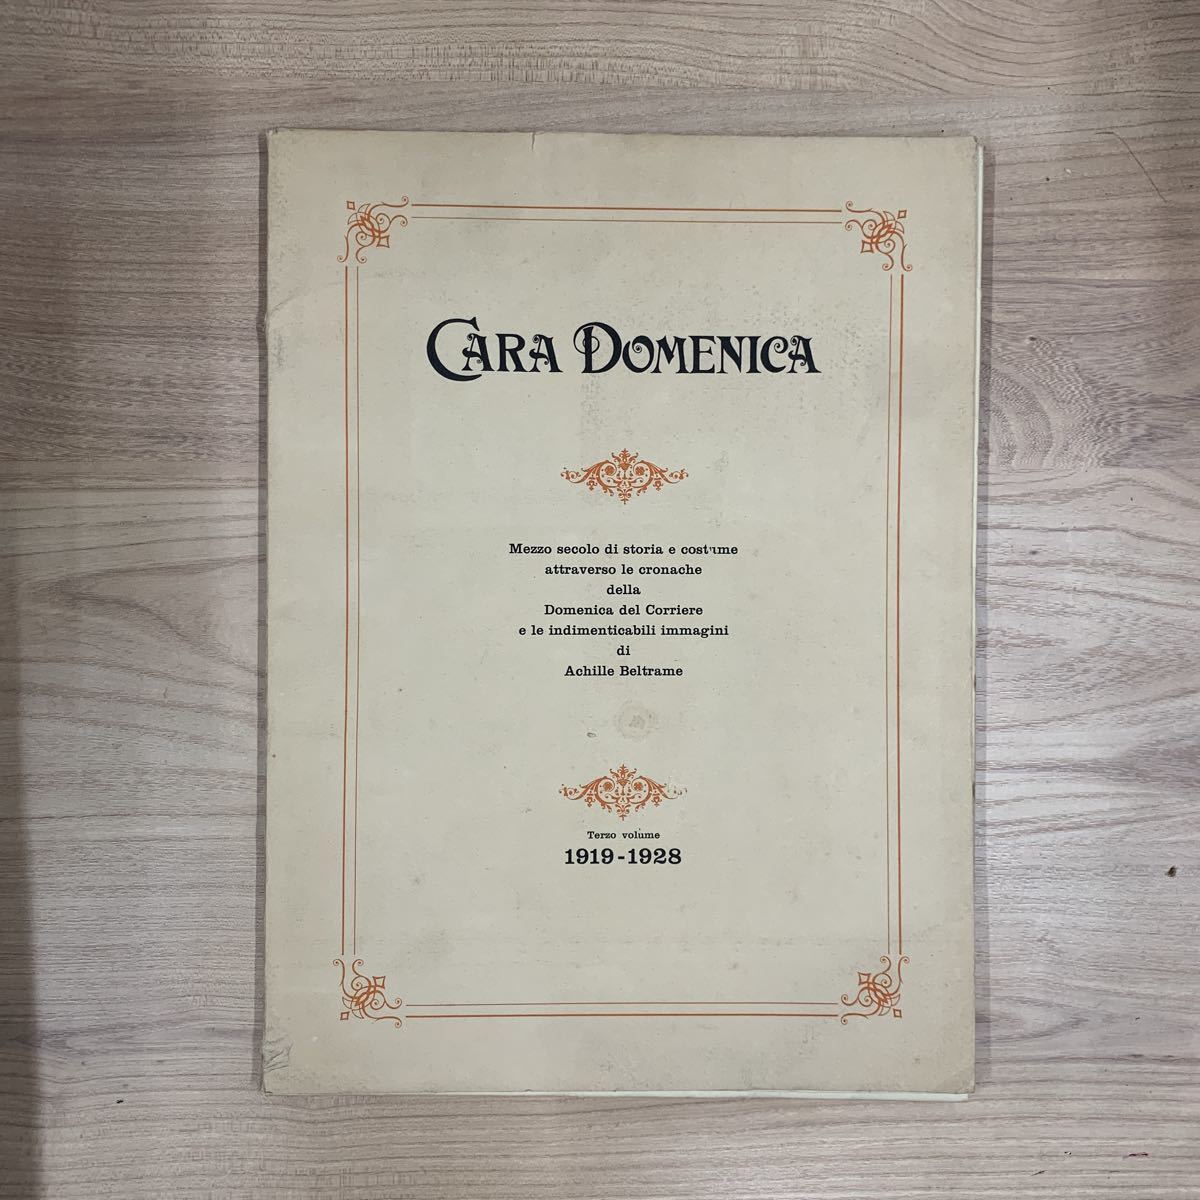 4-25-41 иностранная книга /CARA DOMENICA 1919-1928/ Италия / milano / Classic / Vintage / античный / переиздание /